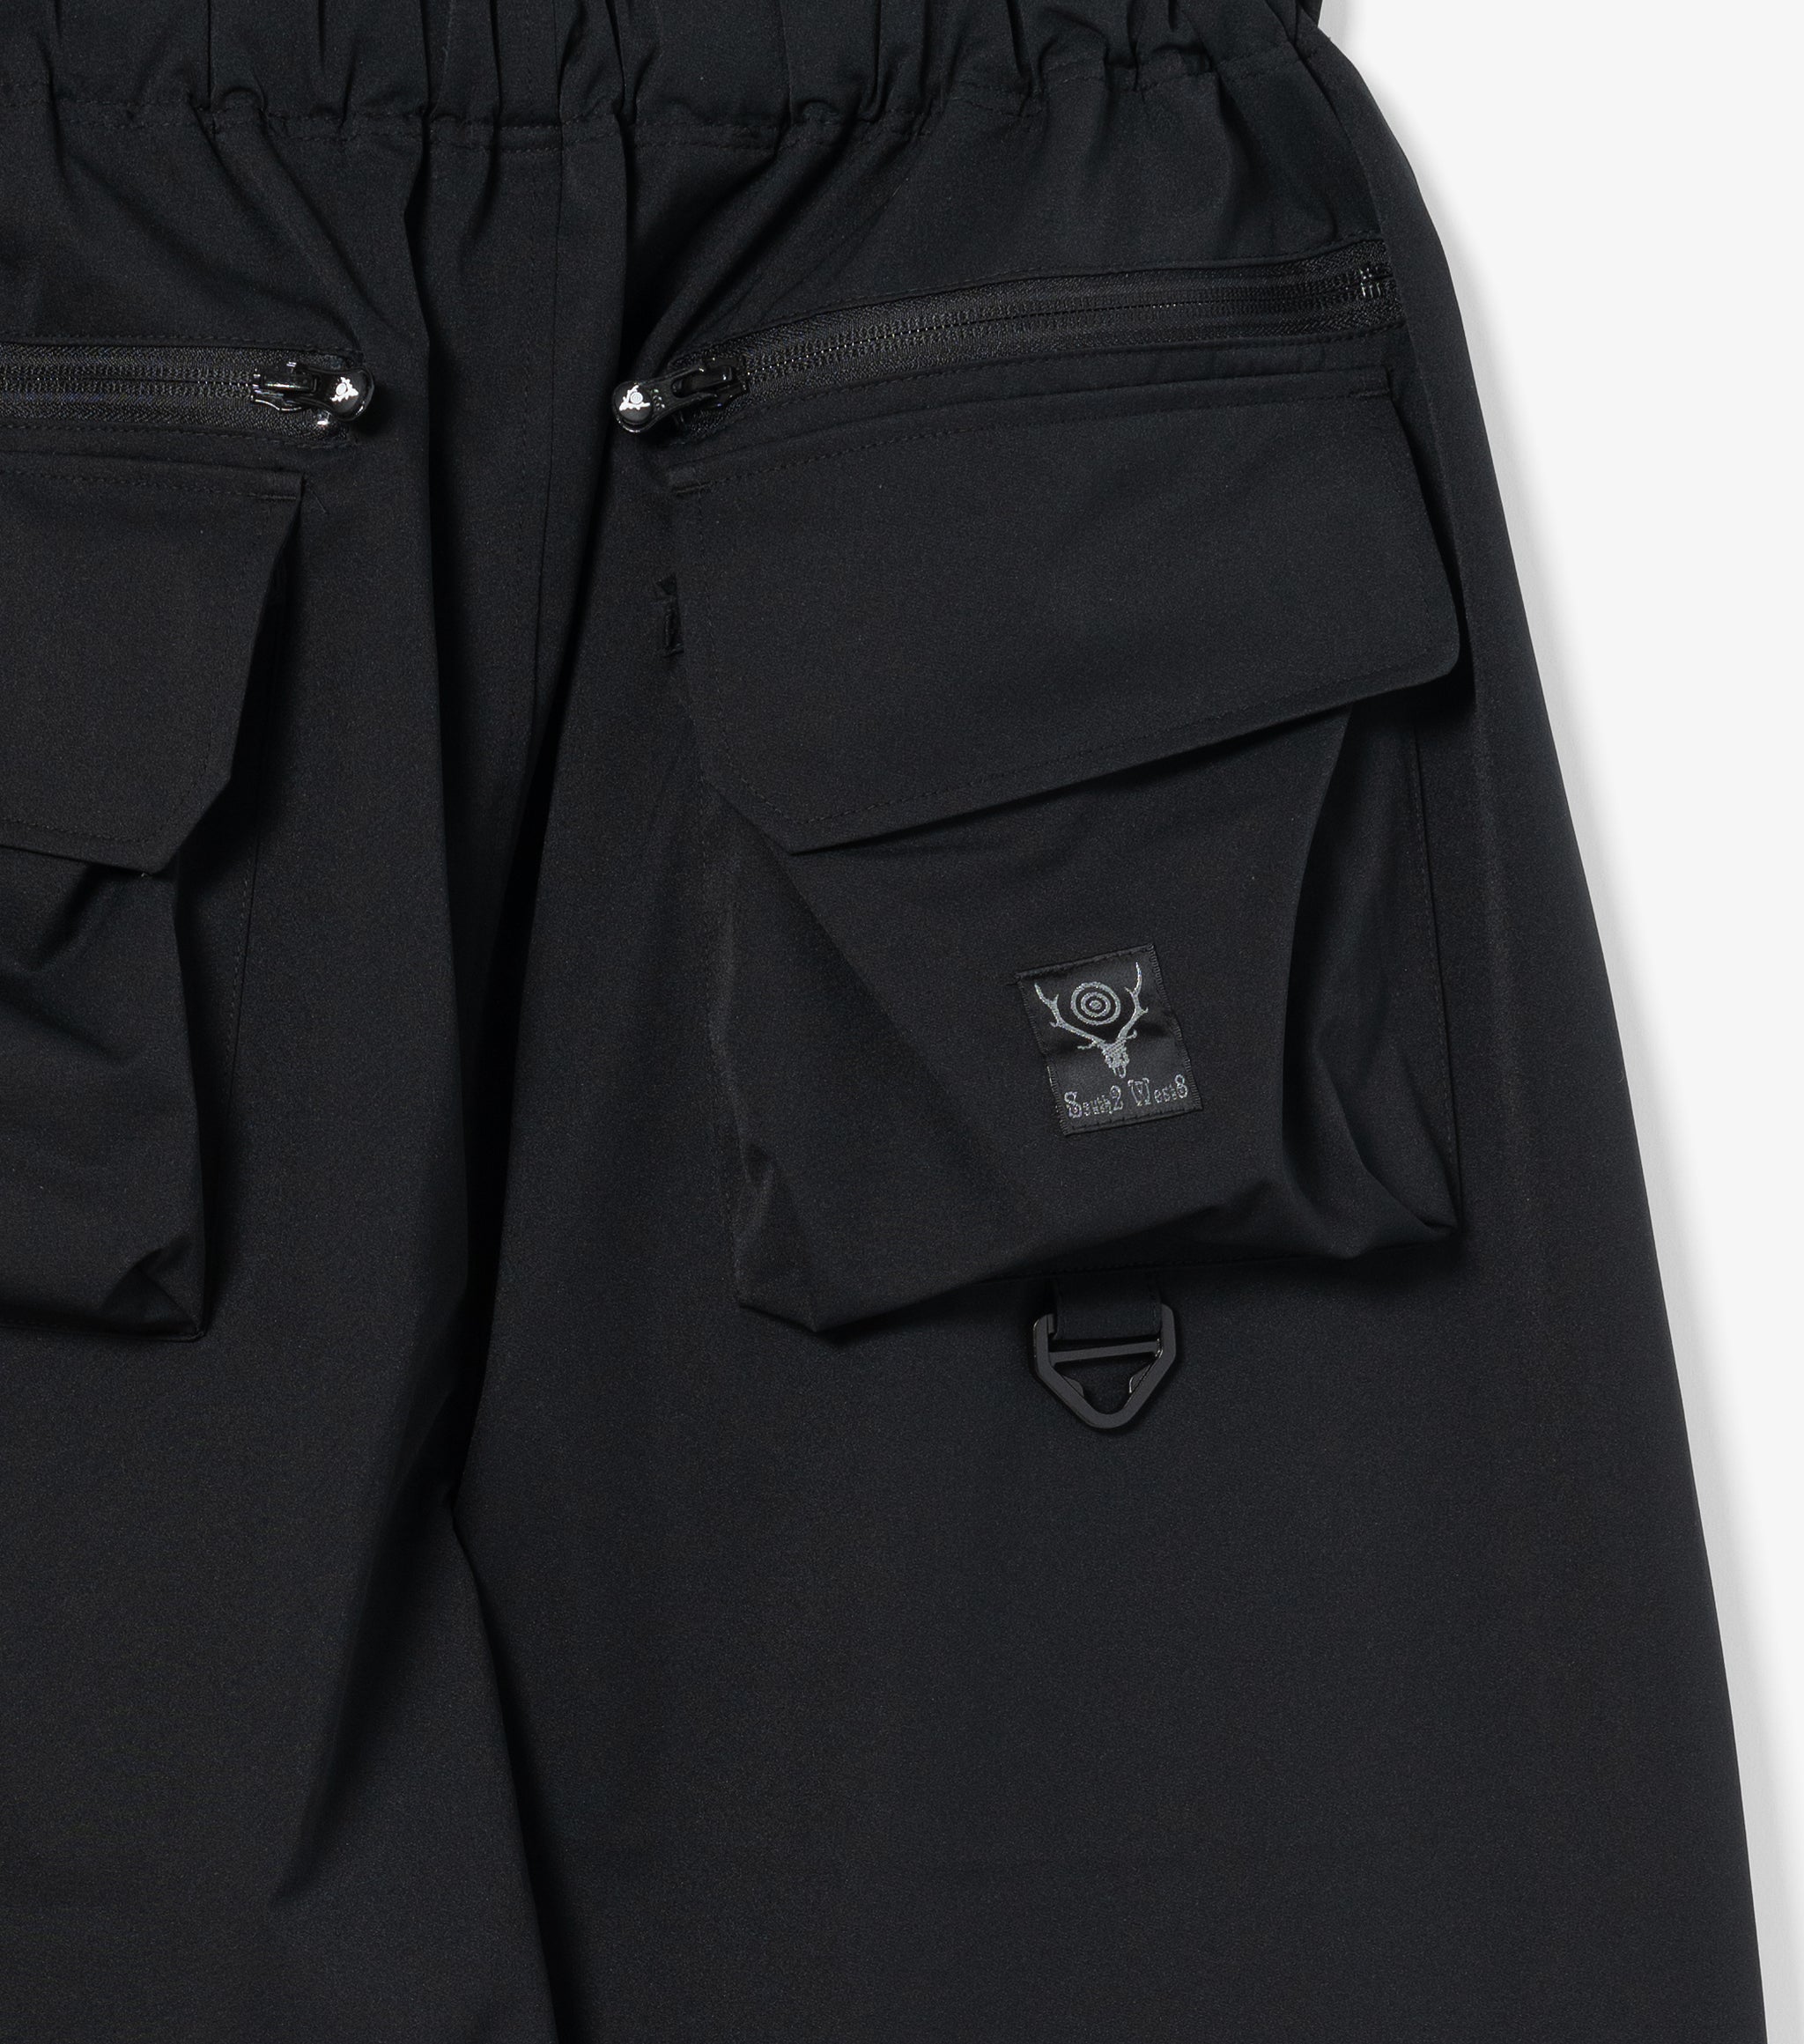 Multi-Pocket Belted Pant (Black)